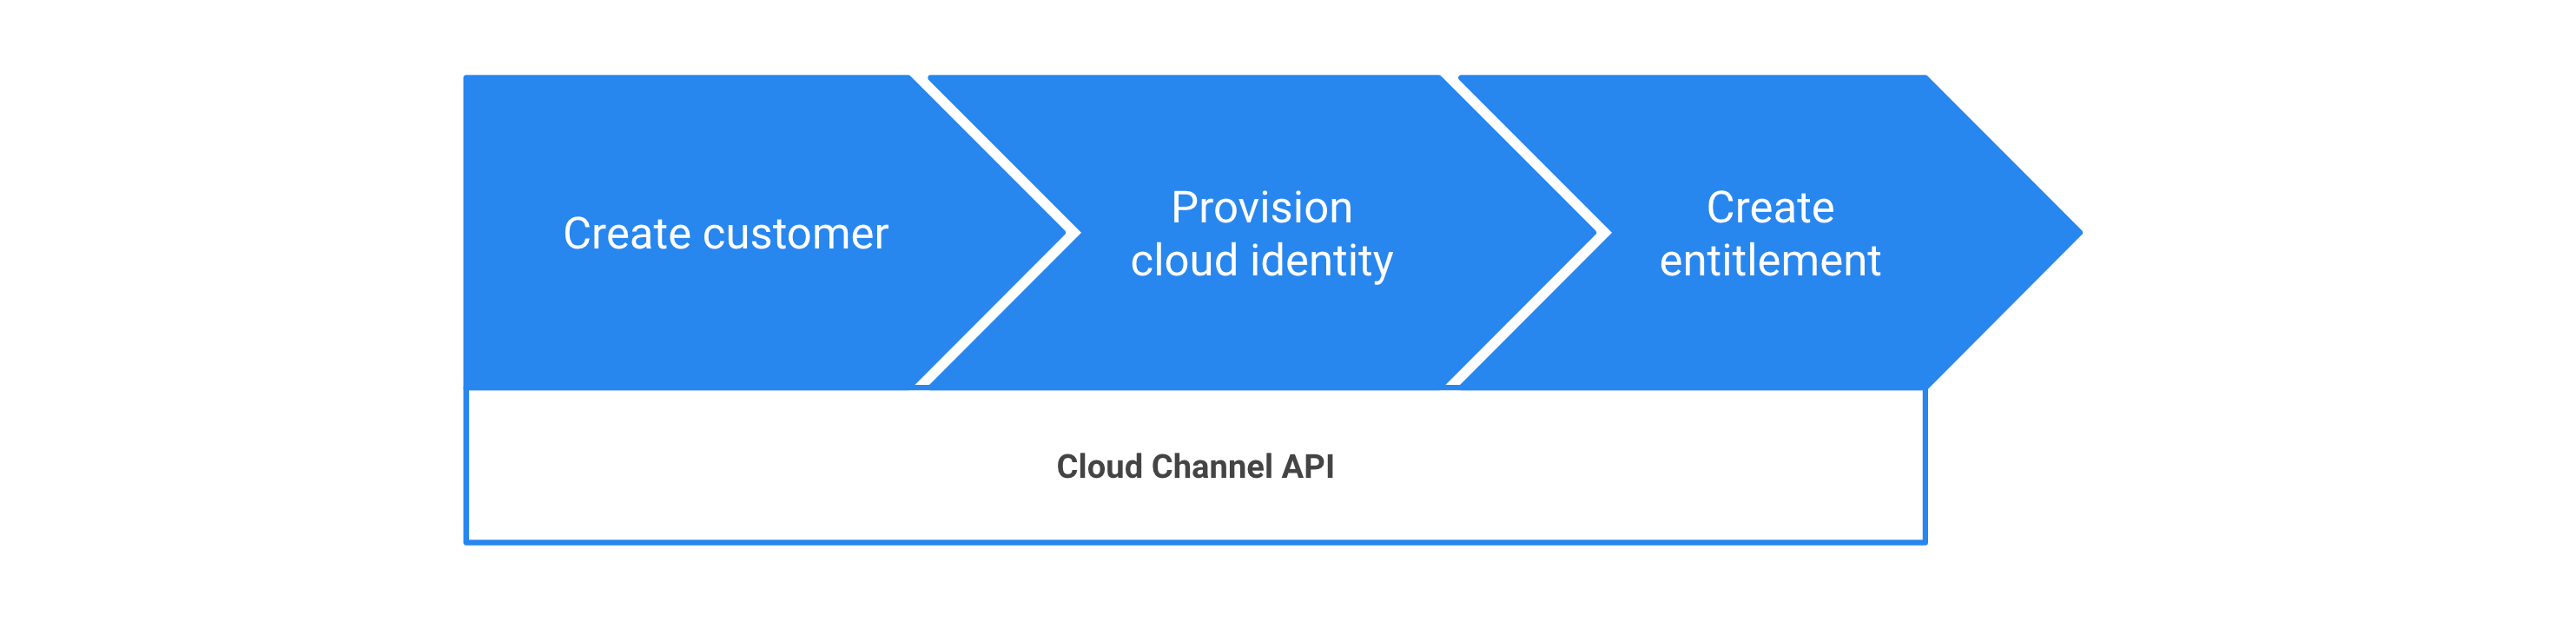 Etapas para provisionar o Google Workspace com a API Cloud Channel